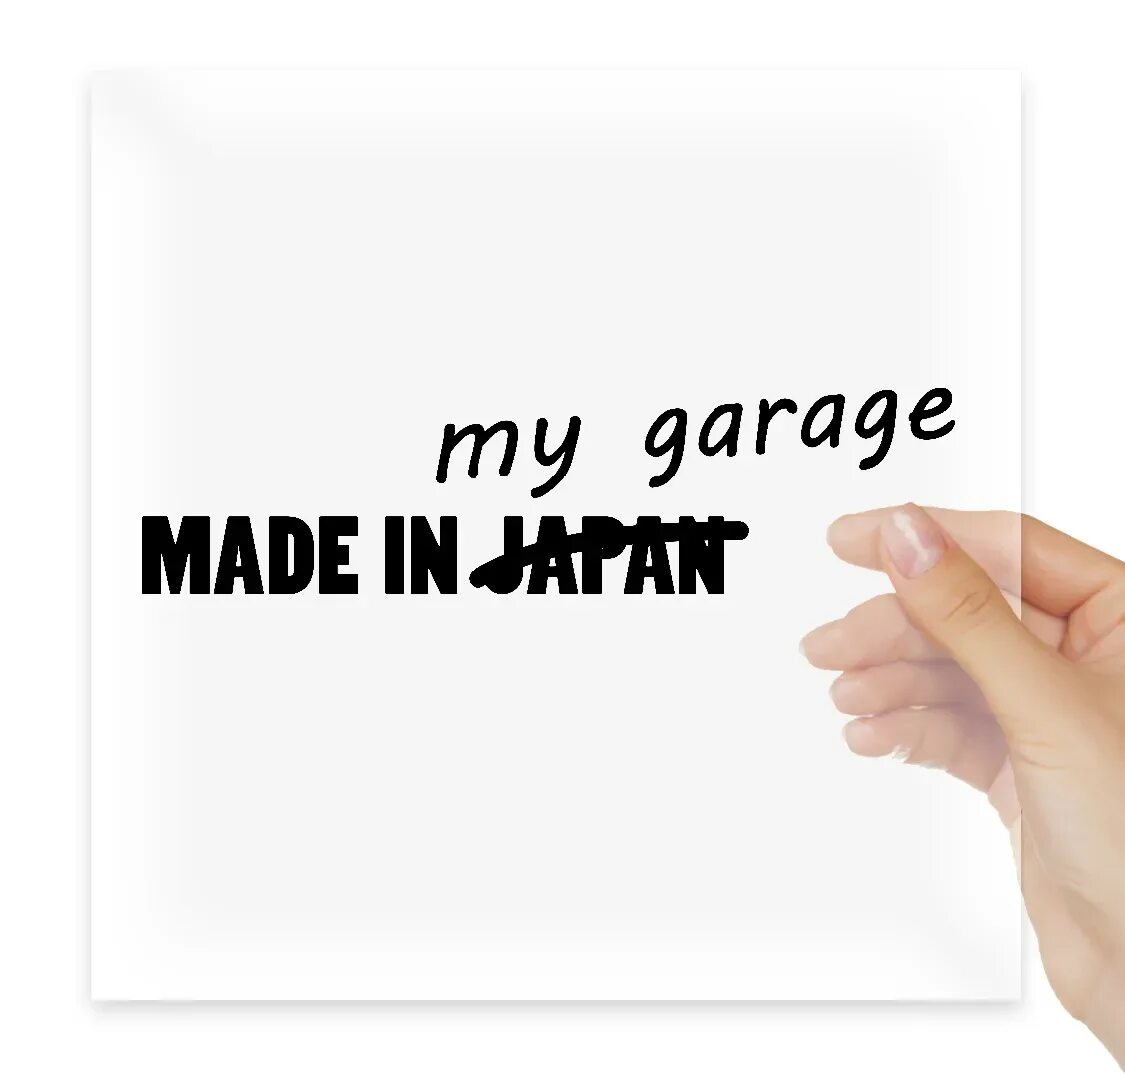 Garage made. Made in Garage наклейка. Made in my Garage. Надпись made in Garage. My Garage.